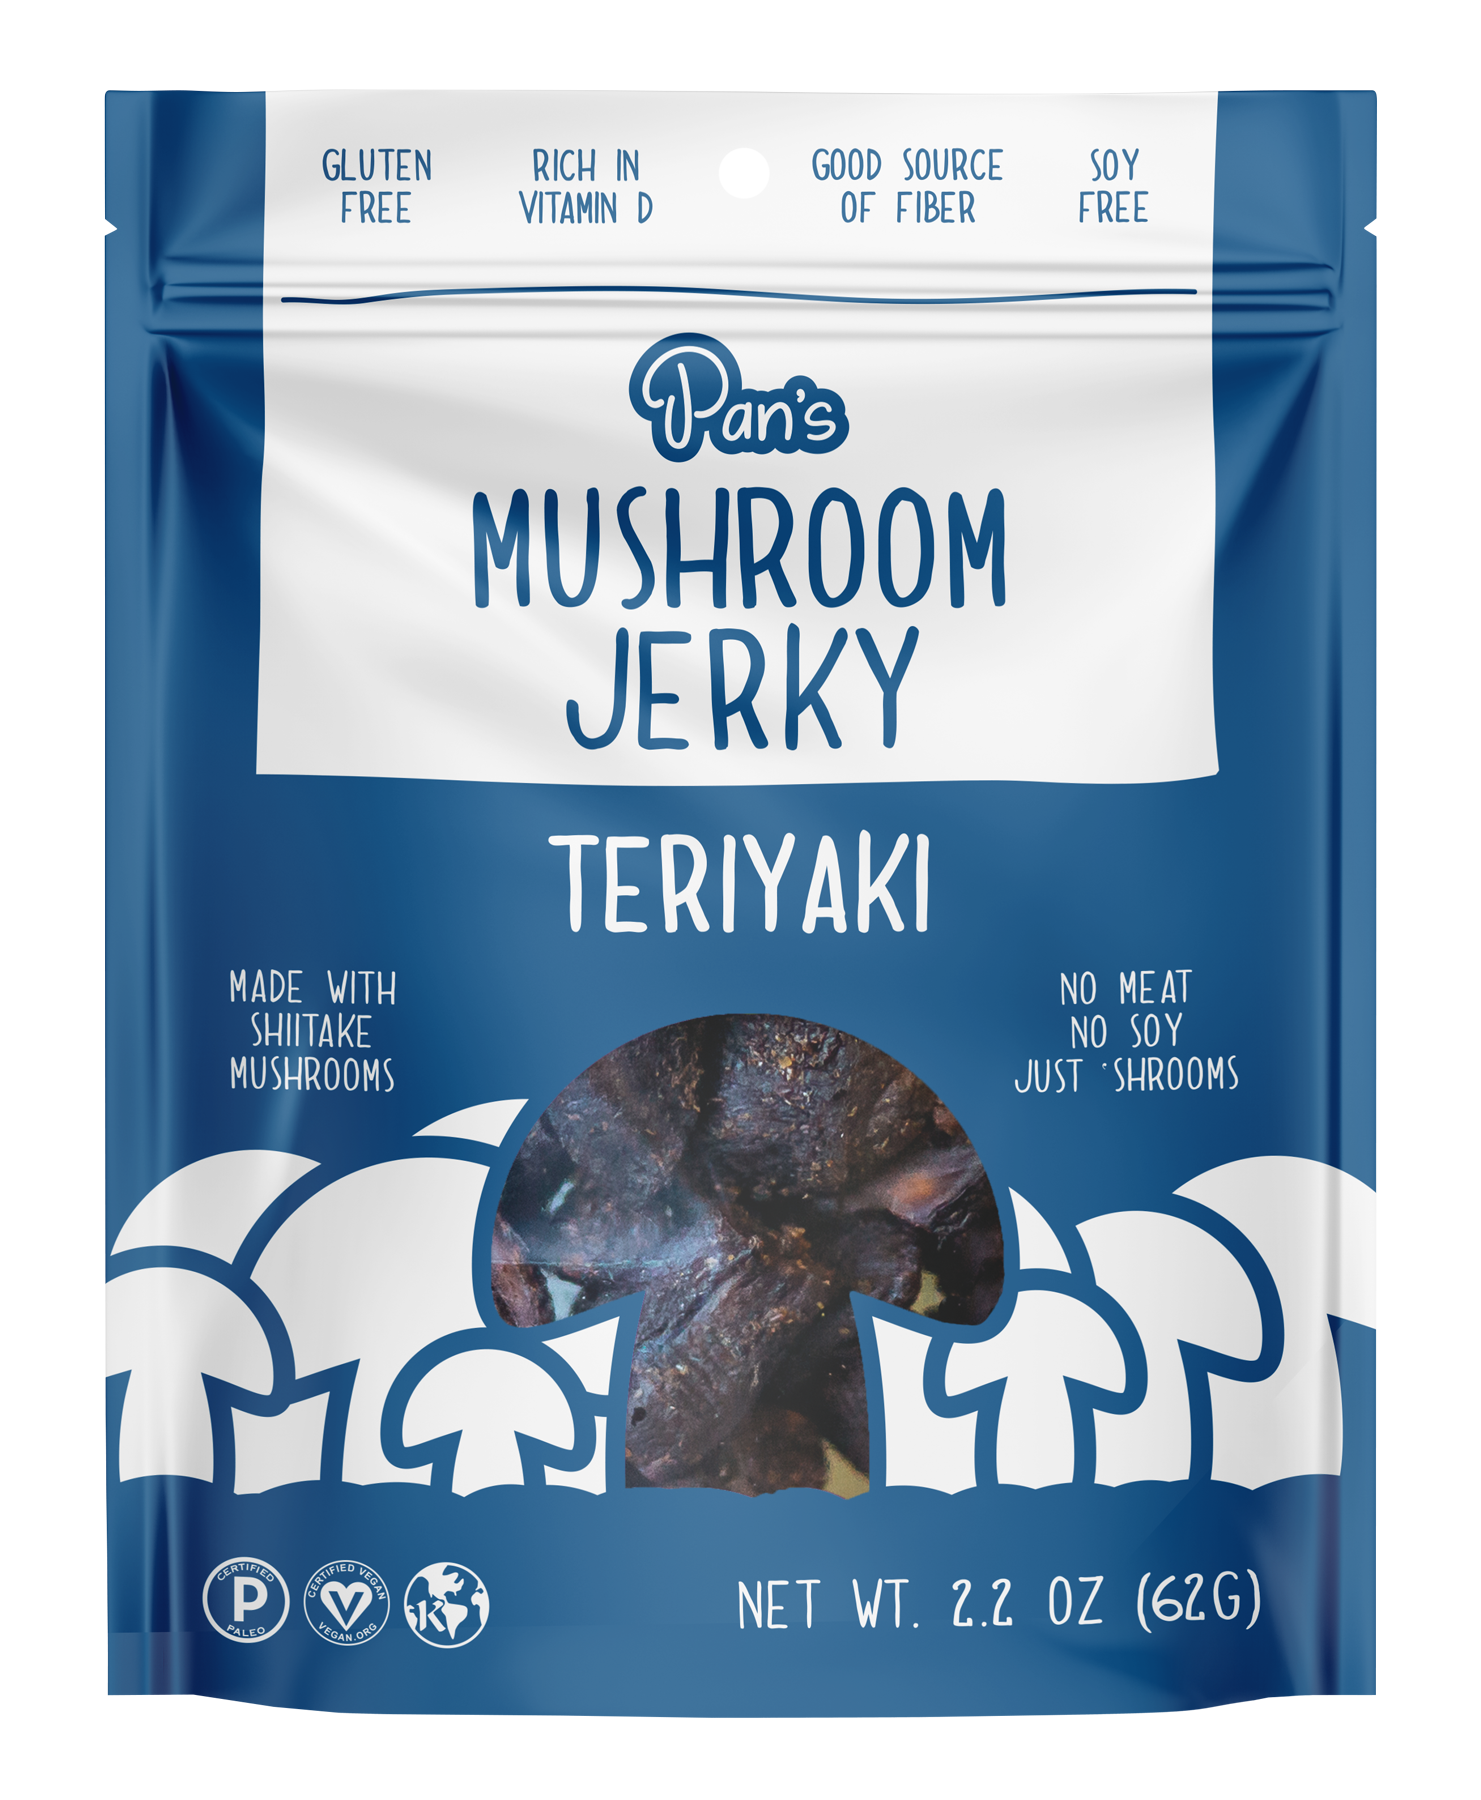 Pan's Mushroom Jerky - Teriyaki mushroom jerky